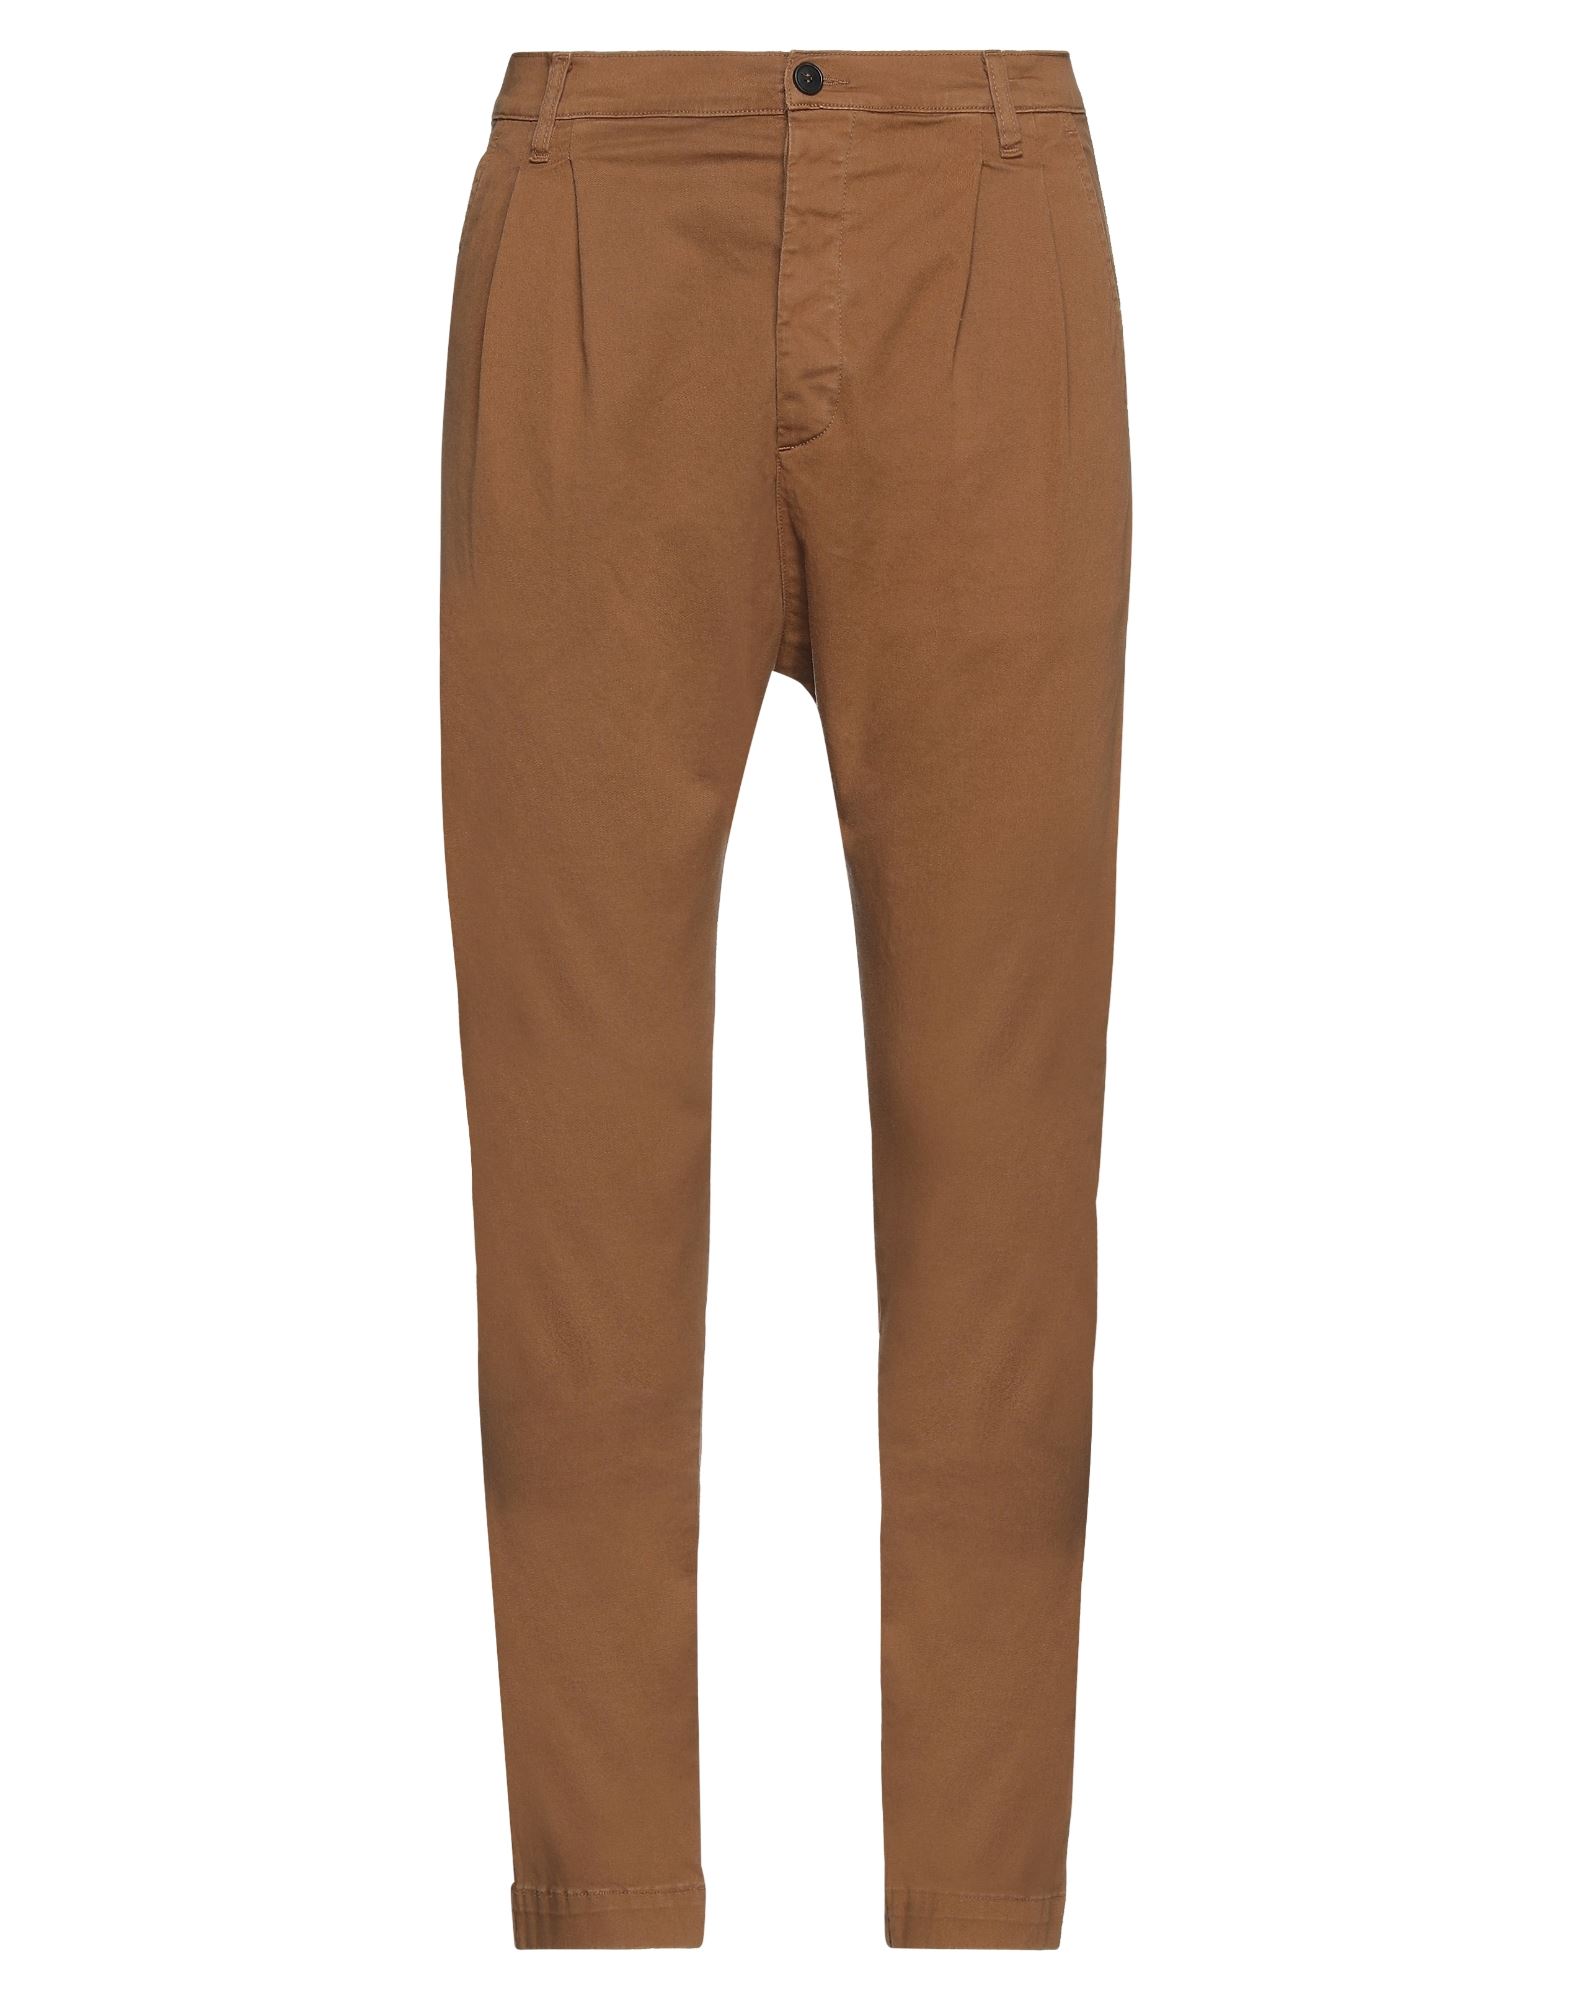 Novemb3r Man Pants Brown Size 33 Cotton, Elastane